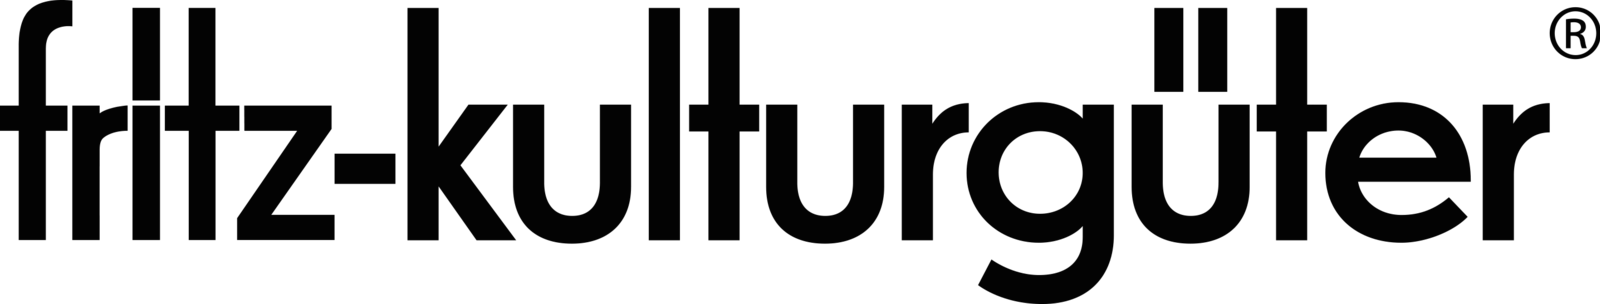 Fritz Kulturgueter Logo